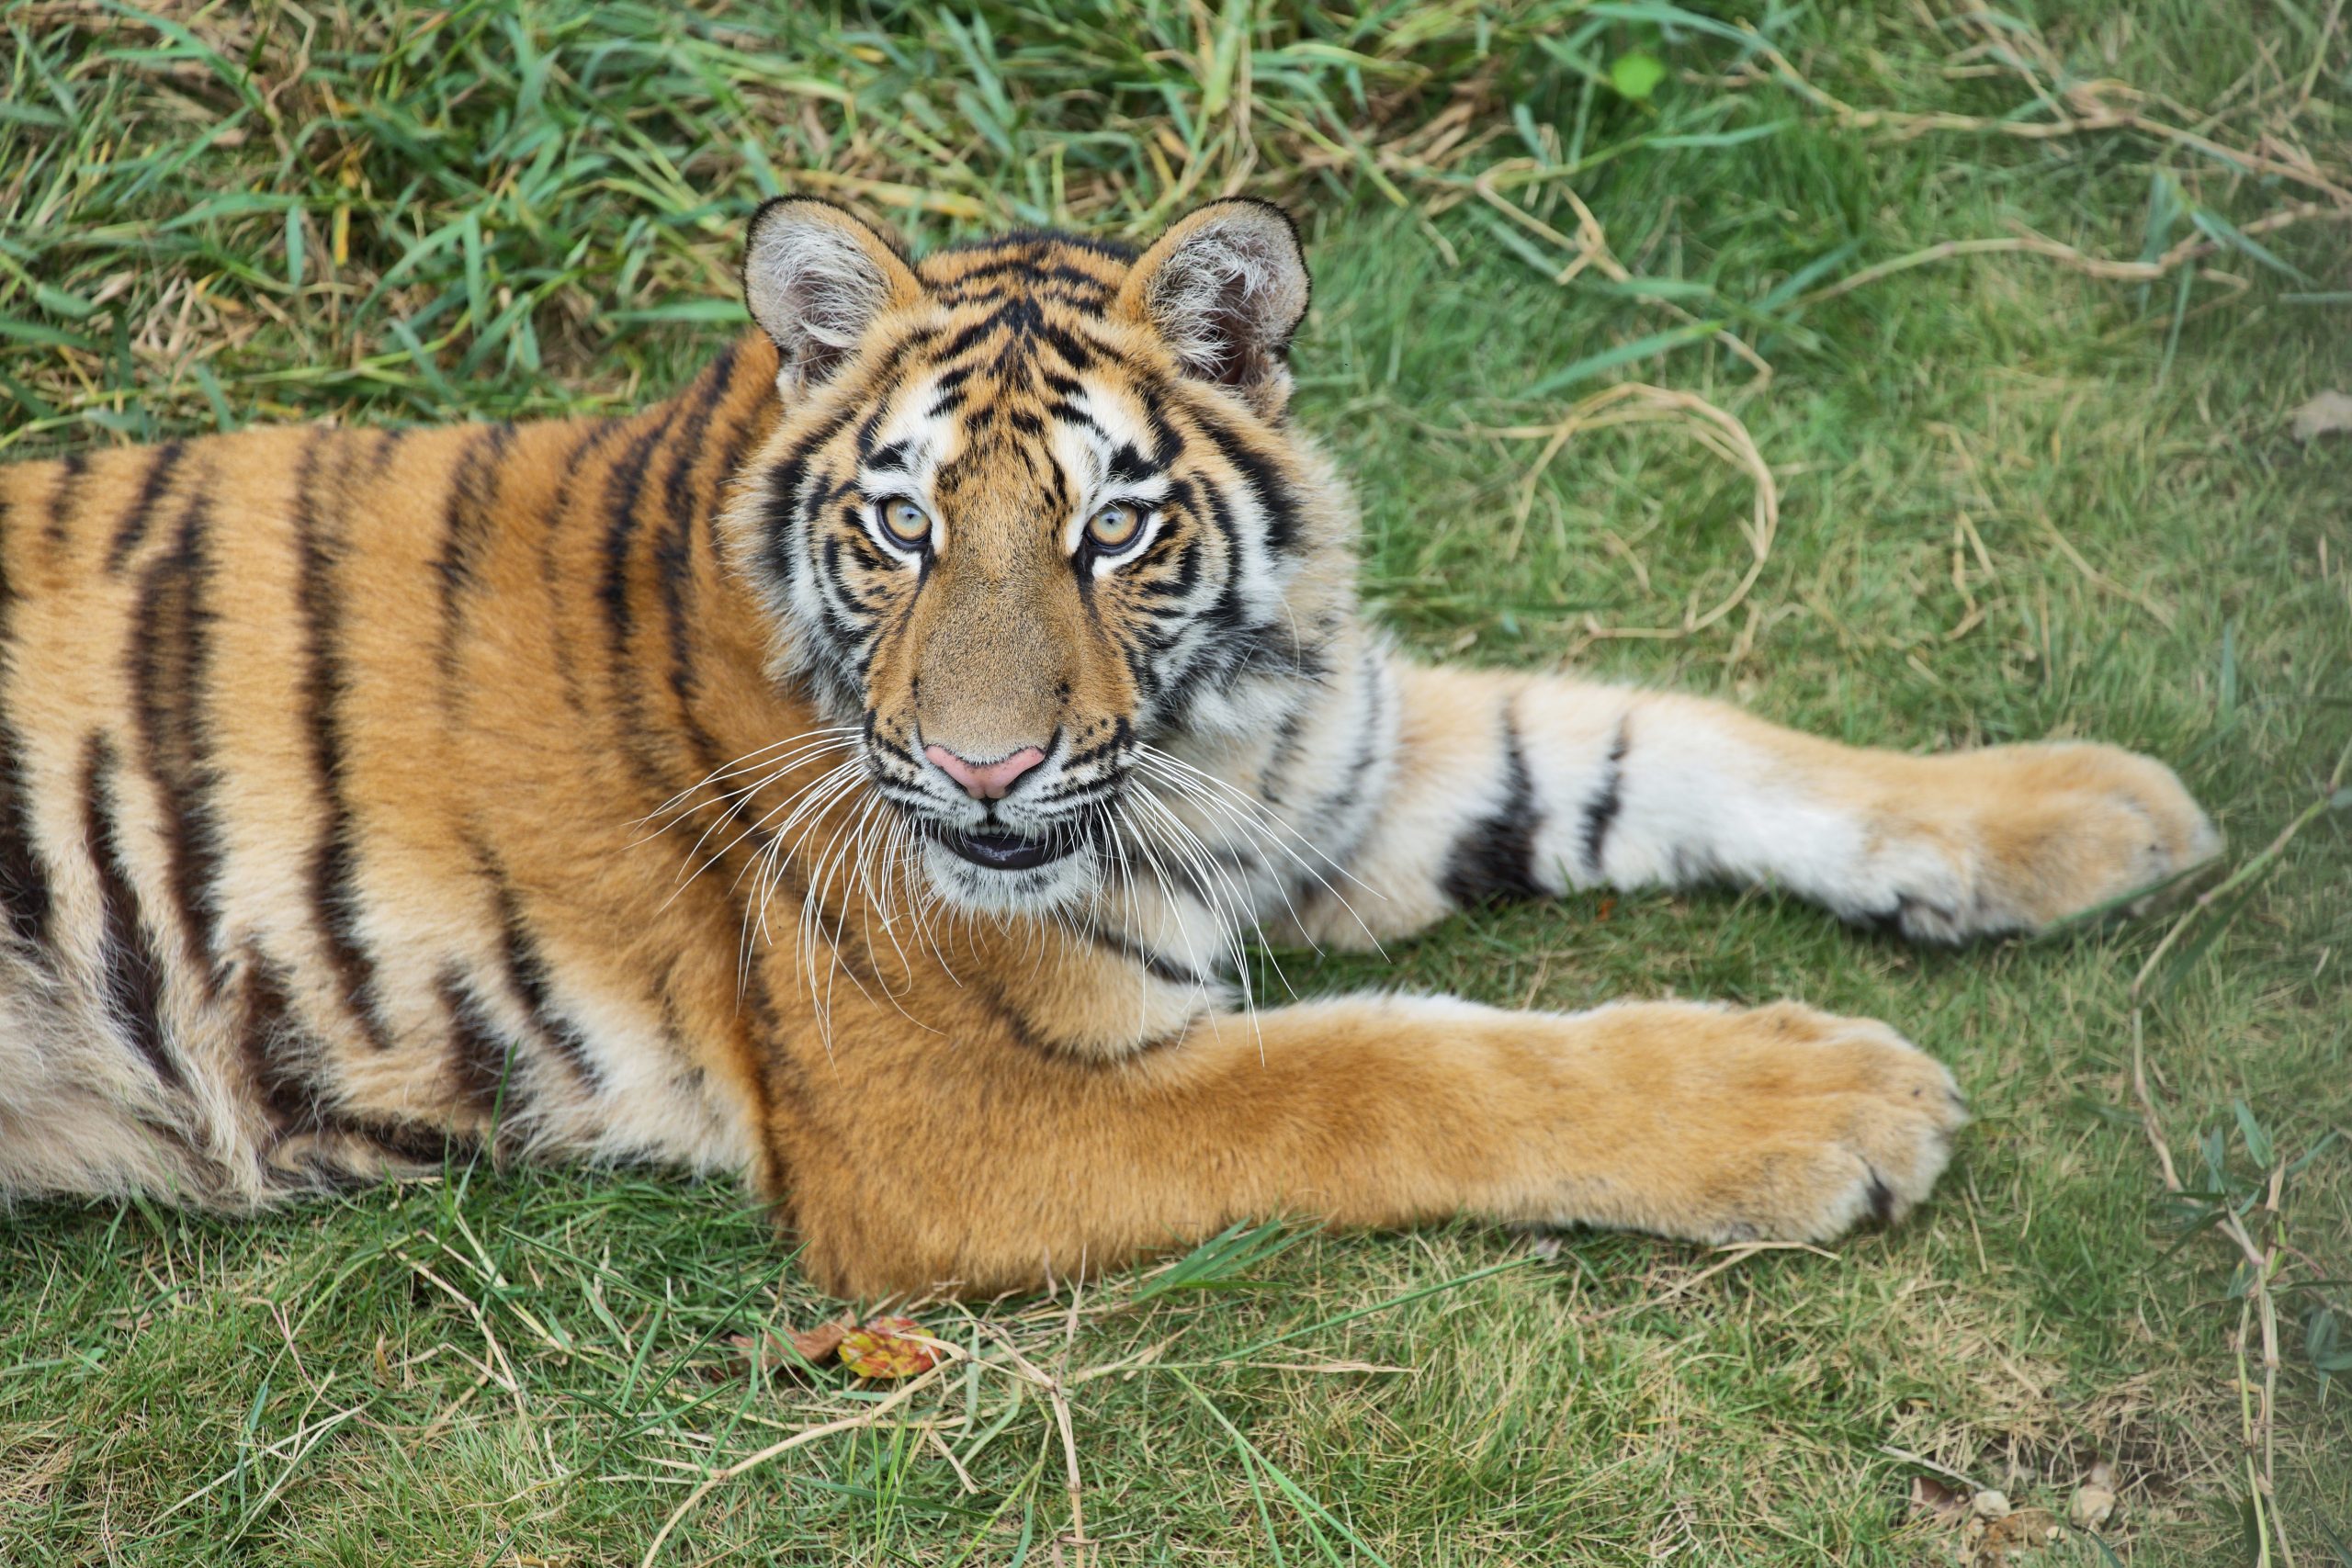 “Begu Kluet” Harimau Betina Sumatera Dilepasliarkan ke Taman Nasional Gunung Leuser